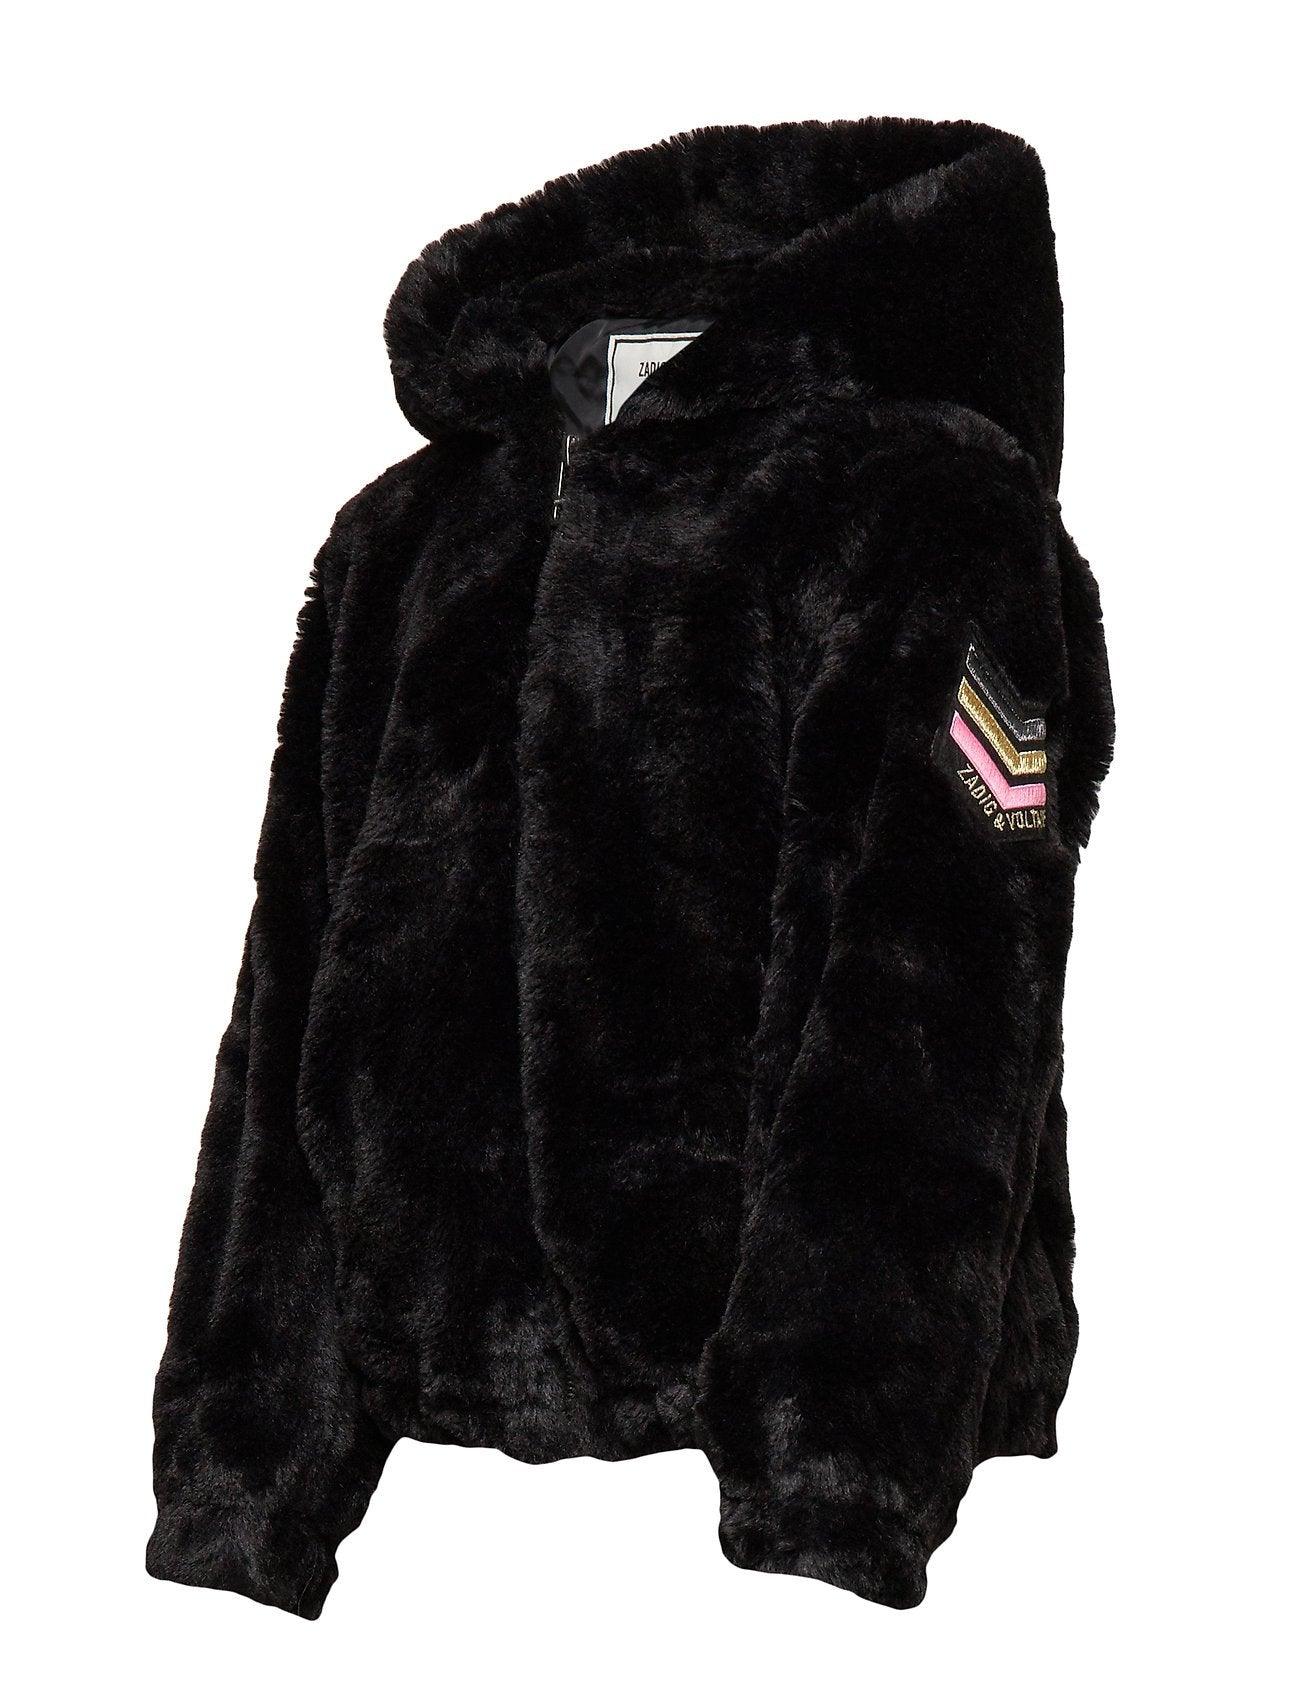 Malia Fur Black Leather Jacket - Leather Loom